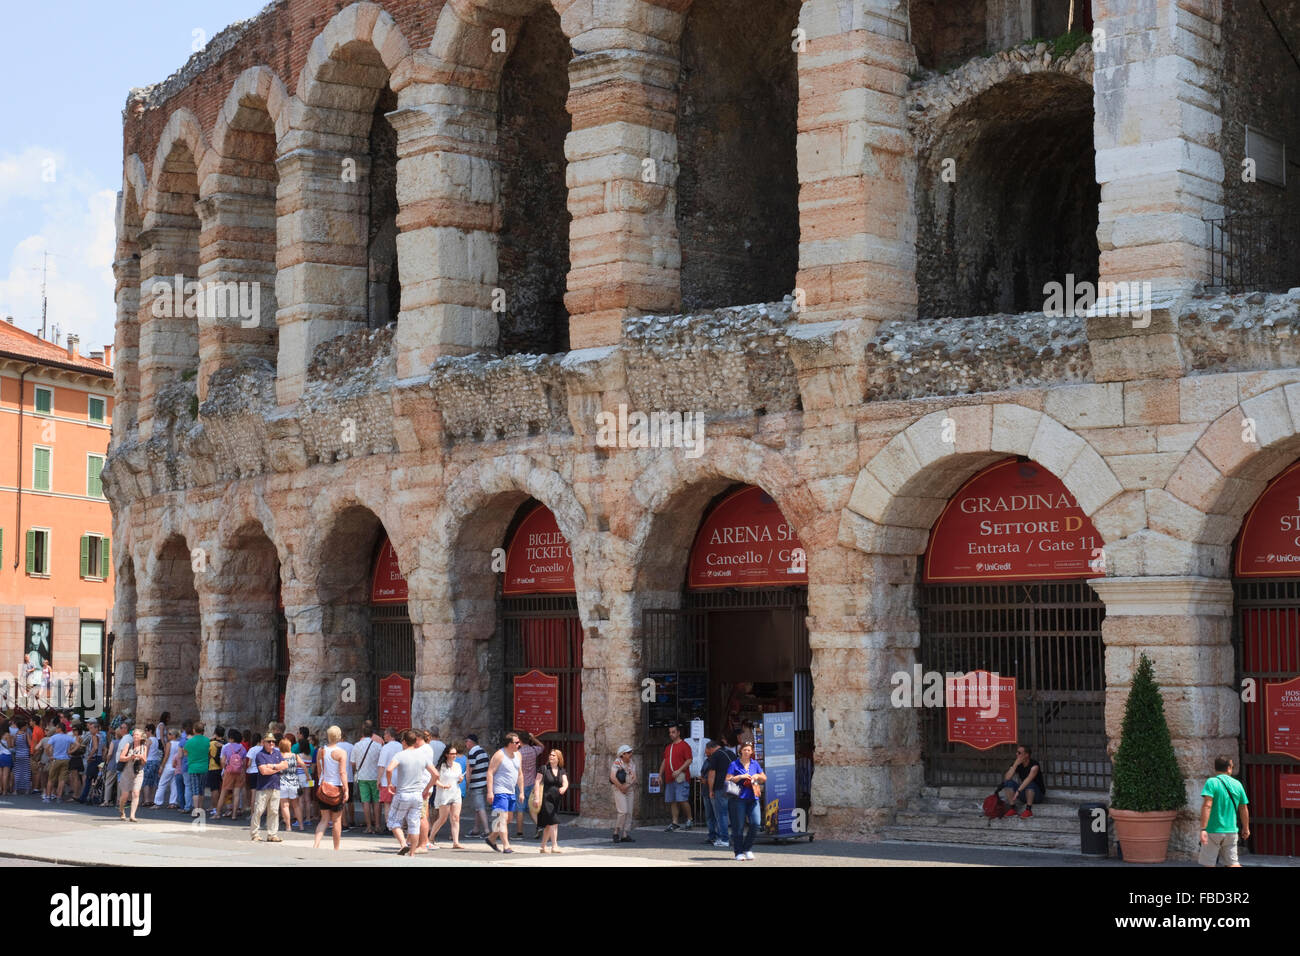 Particolare dell'Arena di Verona, Verona, Italia. Foto Stock